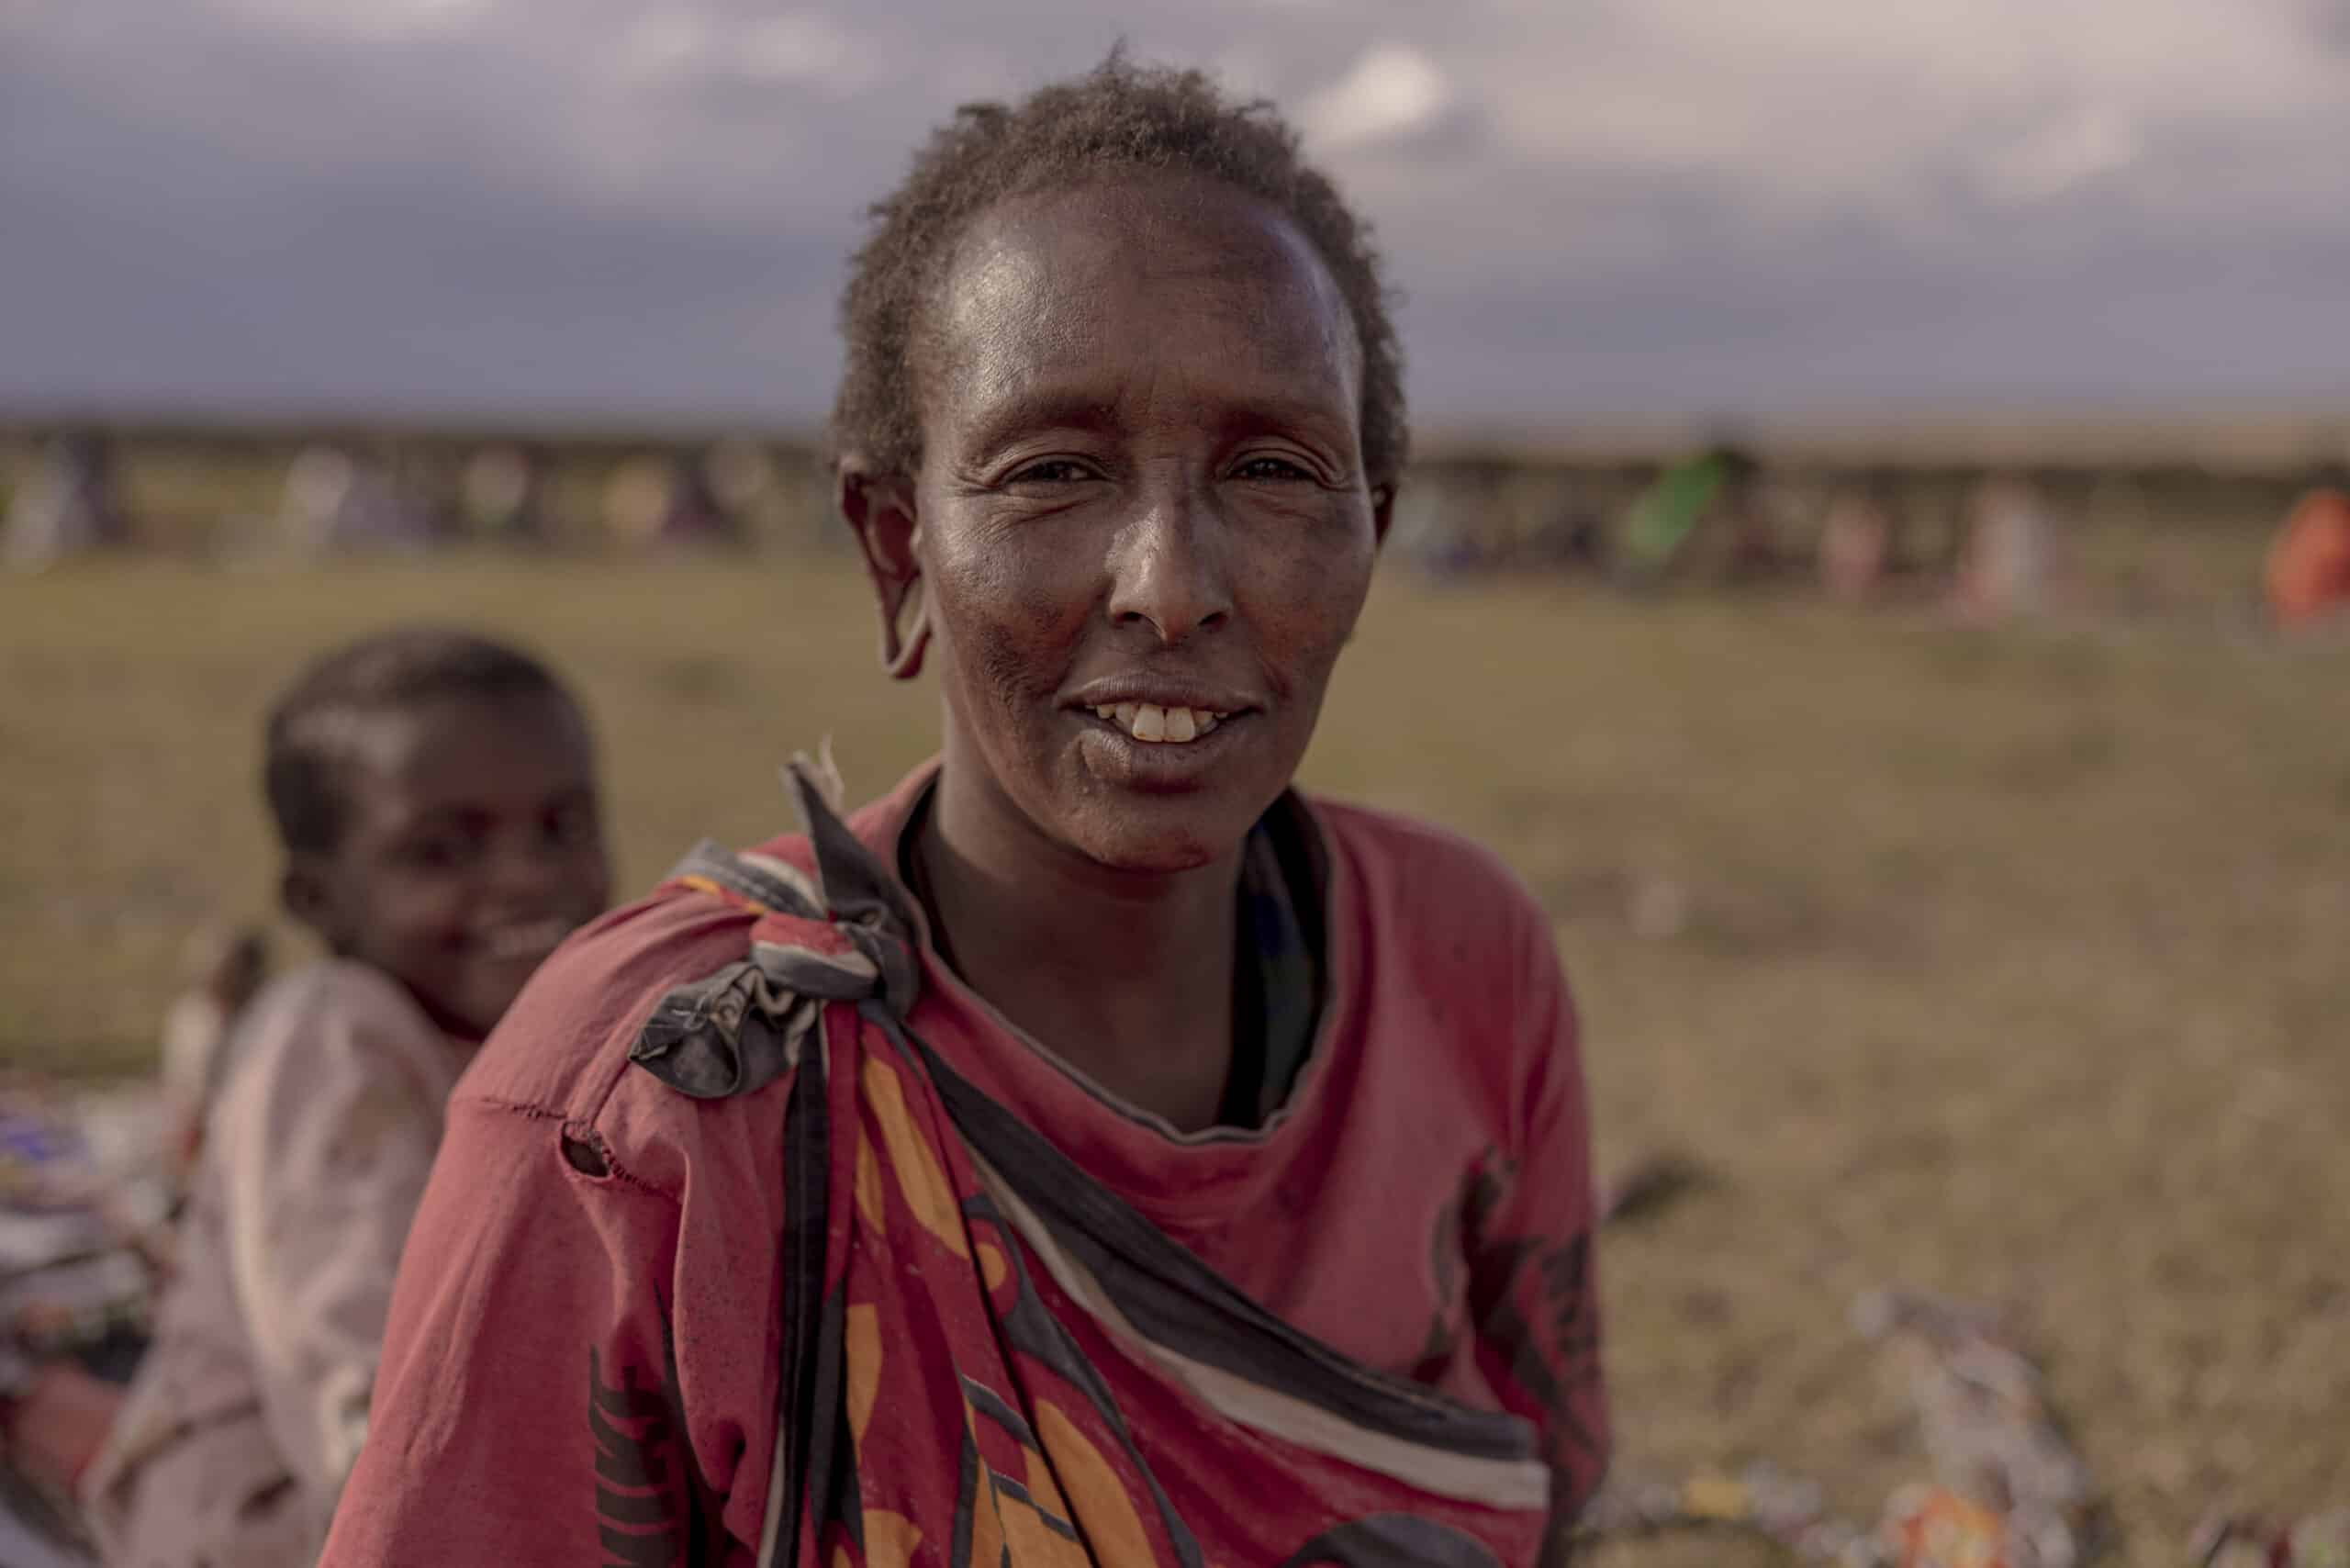 Ein Porträt einer lächelnden Massai-Frau in traditioneller Kleidung vor dem unscharfen Hintergrund einer Wiese und sitzender Menschen. Ihr Gesichtsausdruck ist warmherzig und die Szene spielt im Freien bei Tageslicht. © Fotografie Tomas Rodriguez